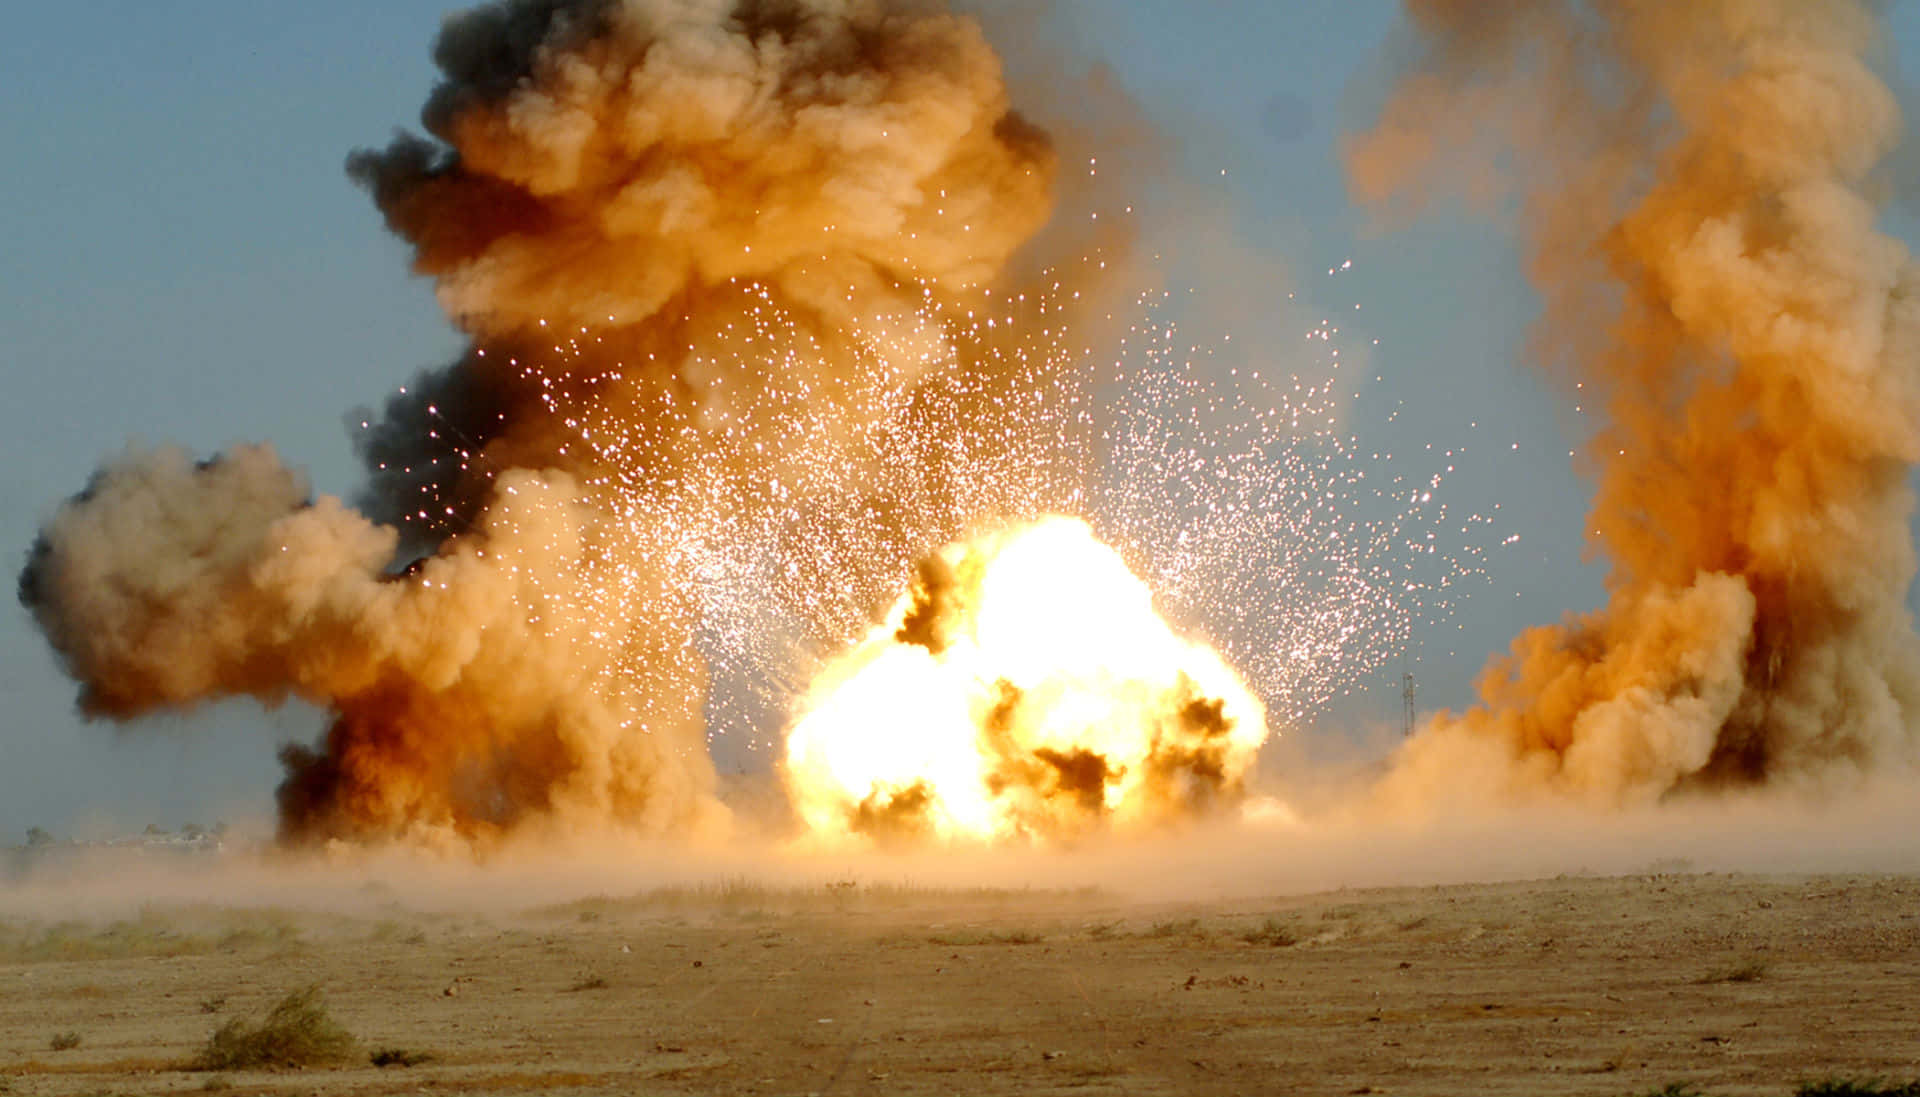 Hintergrundbildmit Einer Gewaltigen Explosion In Einem Actionfilm.